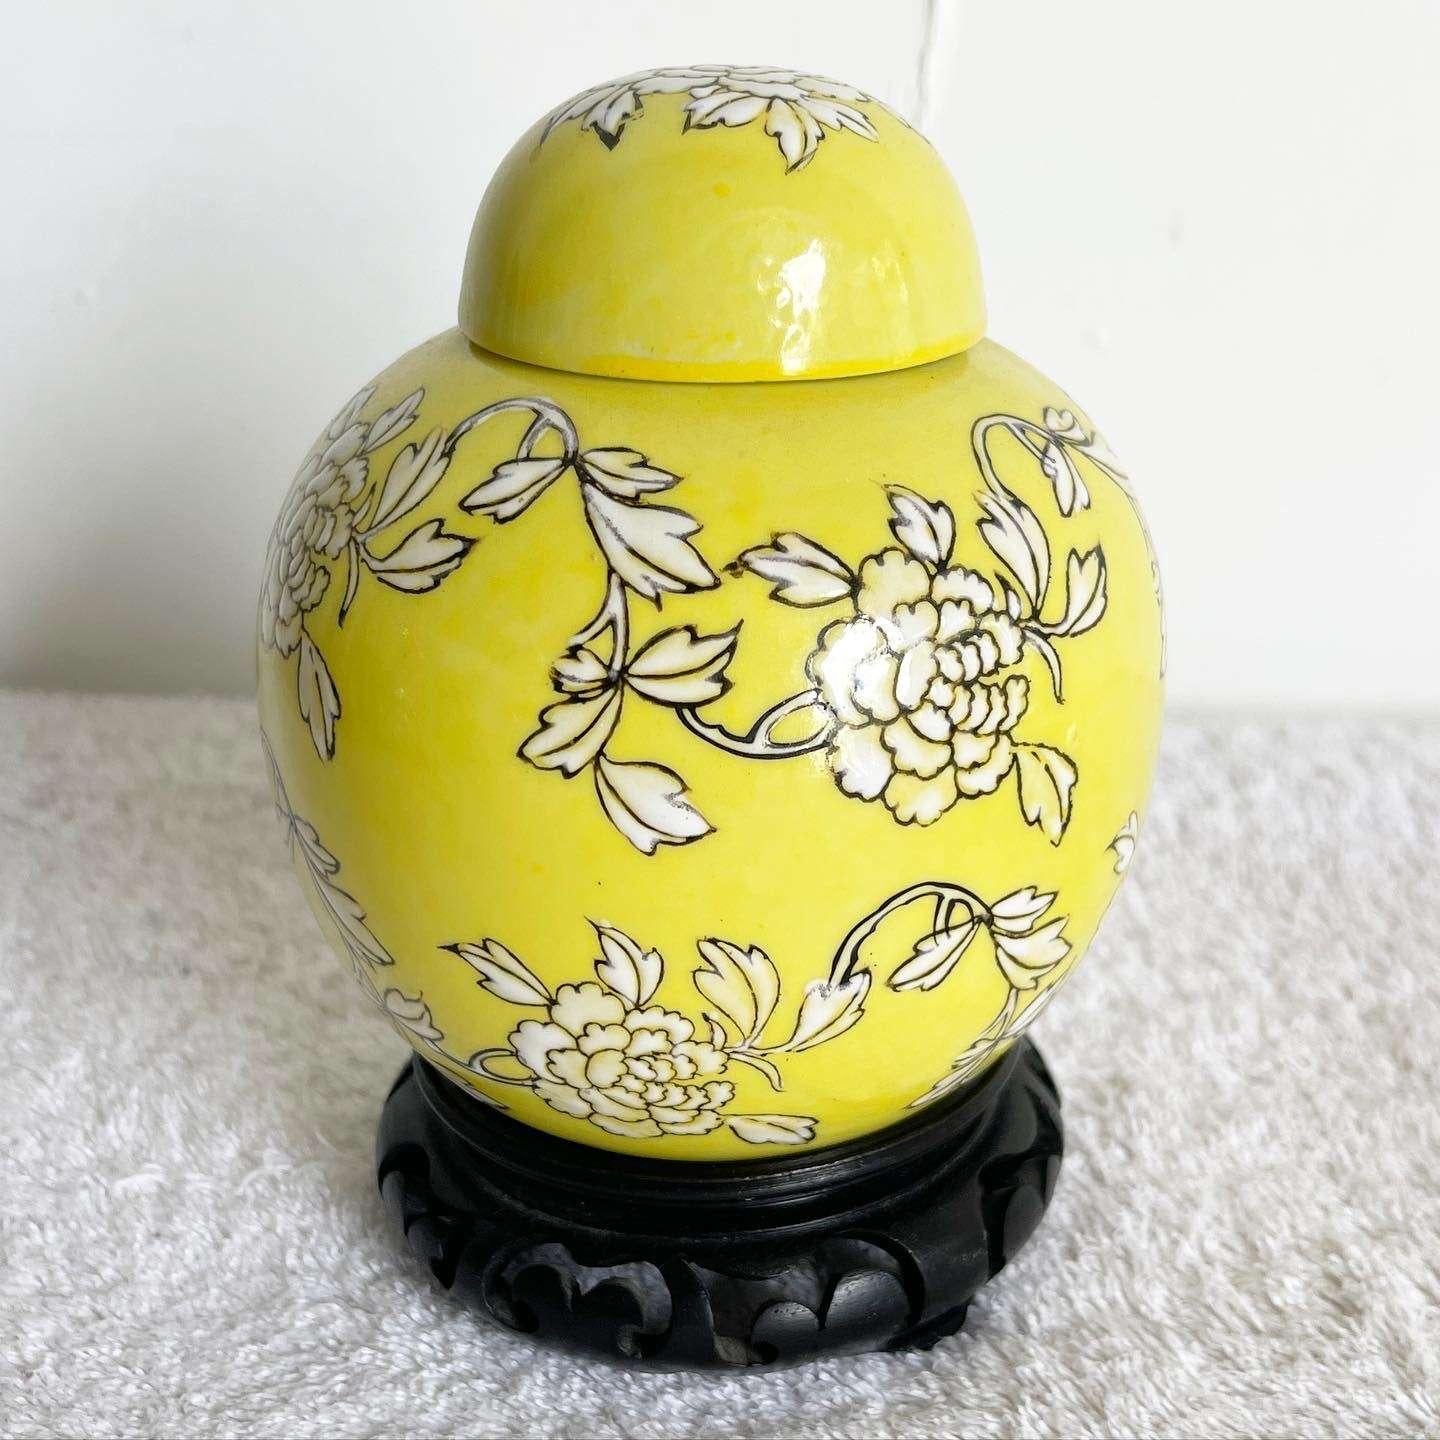 Tauchen Sie ein in die zeitlose Schönheit dieses außergewöhnlichen chinesischen, gelben, floralen Vintage-Ingwerdosen-Sets. Das mit Sorgfalt gefertigte Keramikgefäß und der dazugehörige Teller aus Metall und Keramik bilden ein exquisites Duo. Sie